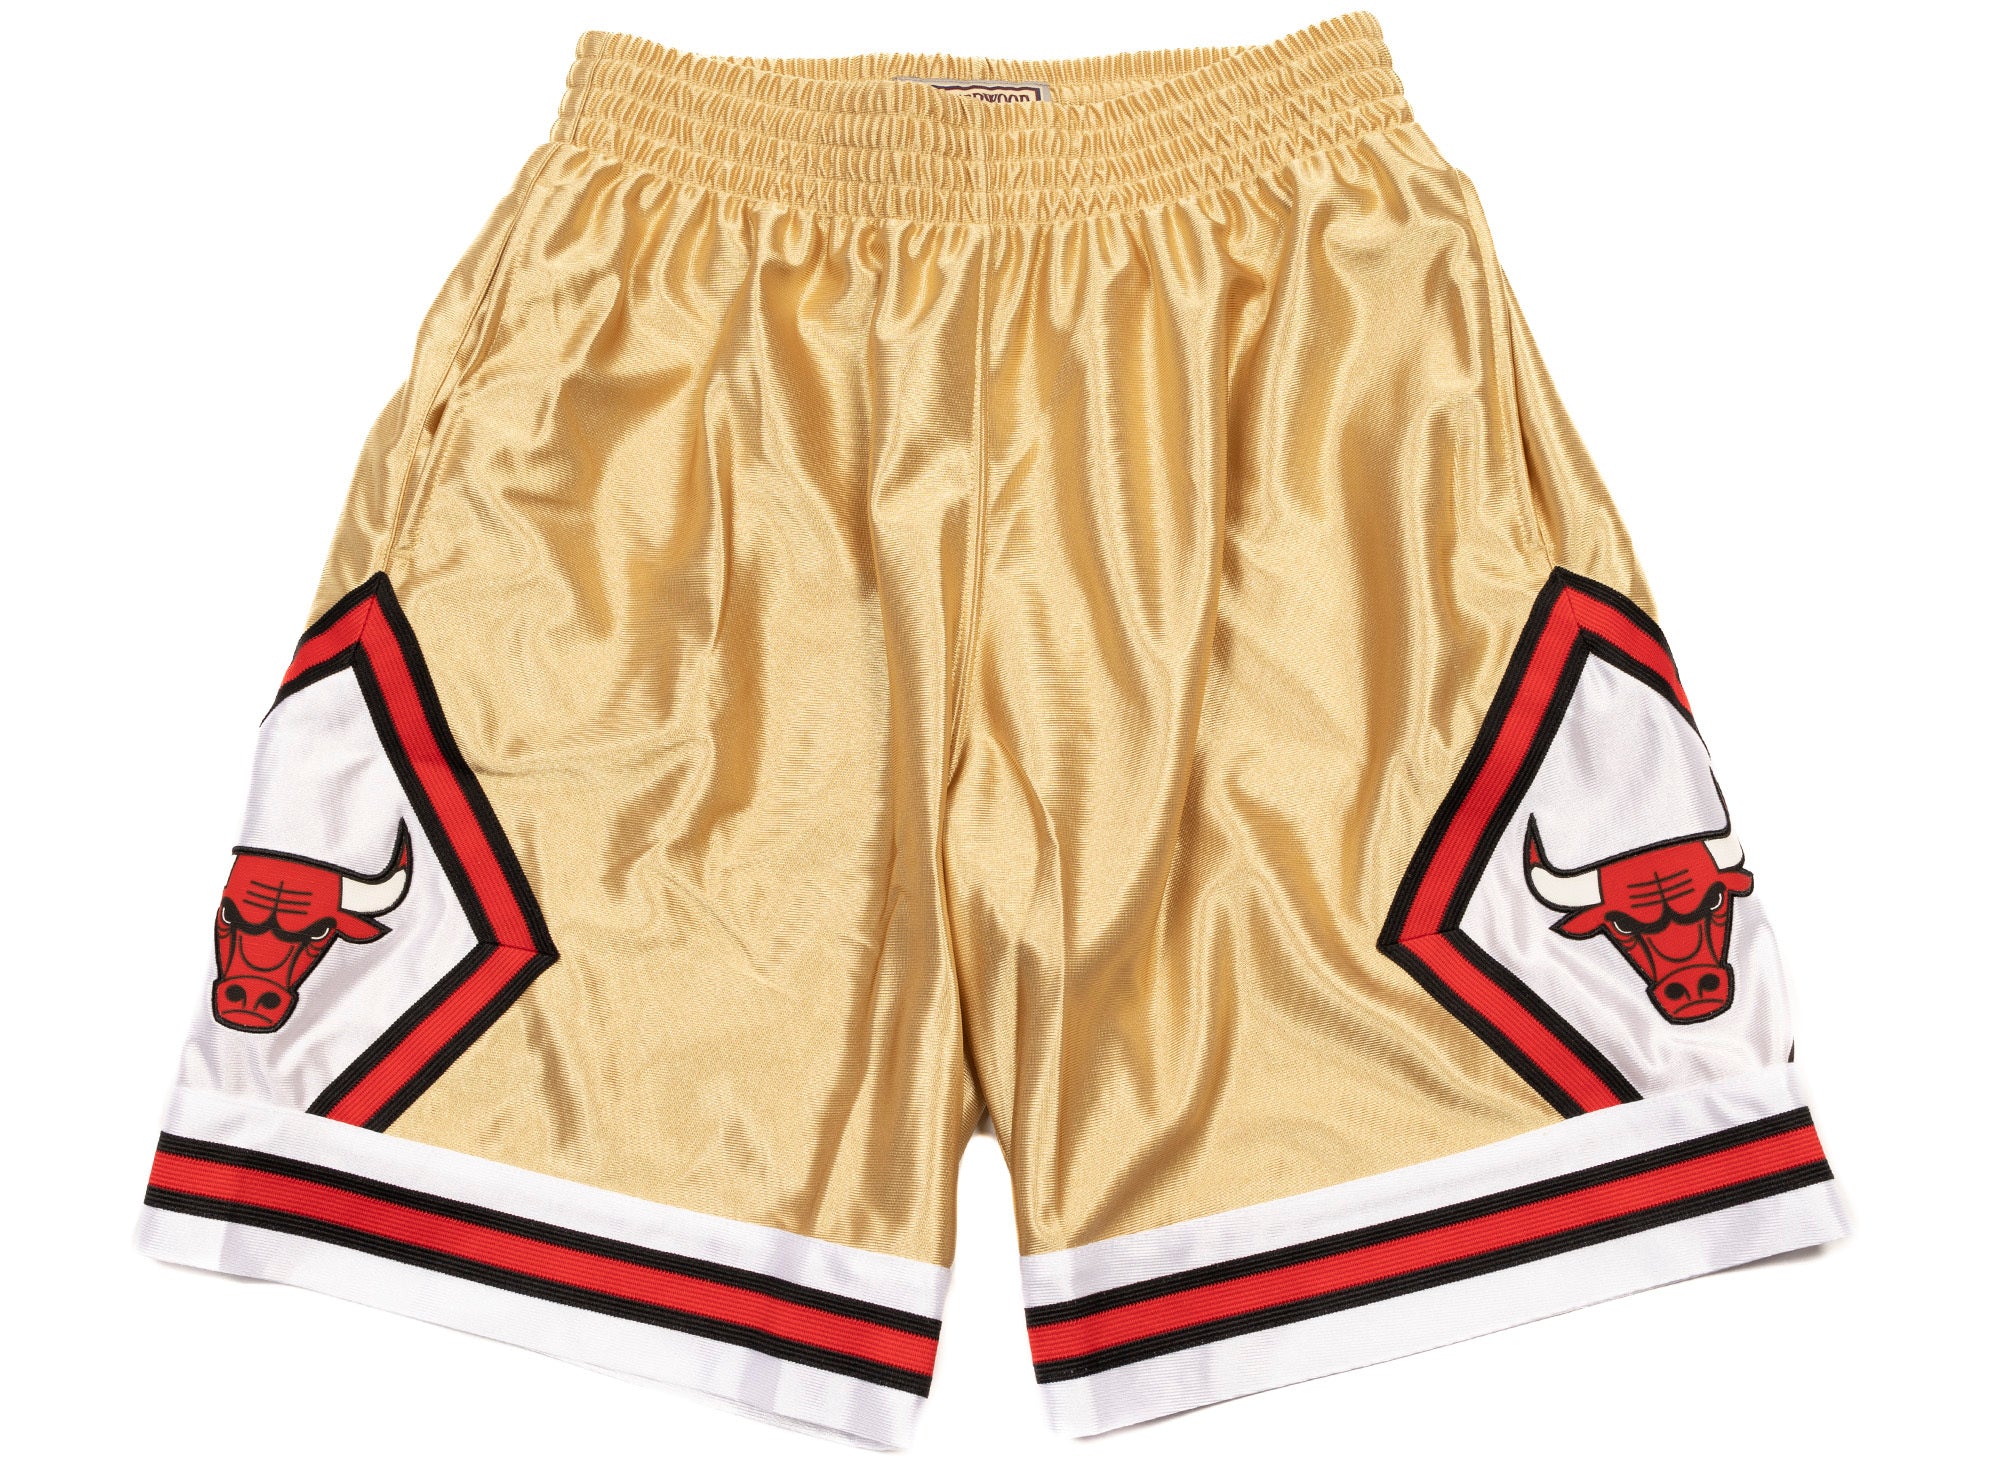 Mitchell & Ness Men's Chicago Bulls Tan Khaki Shorts